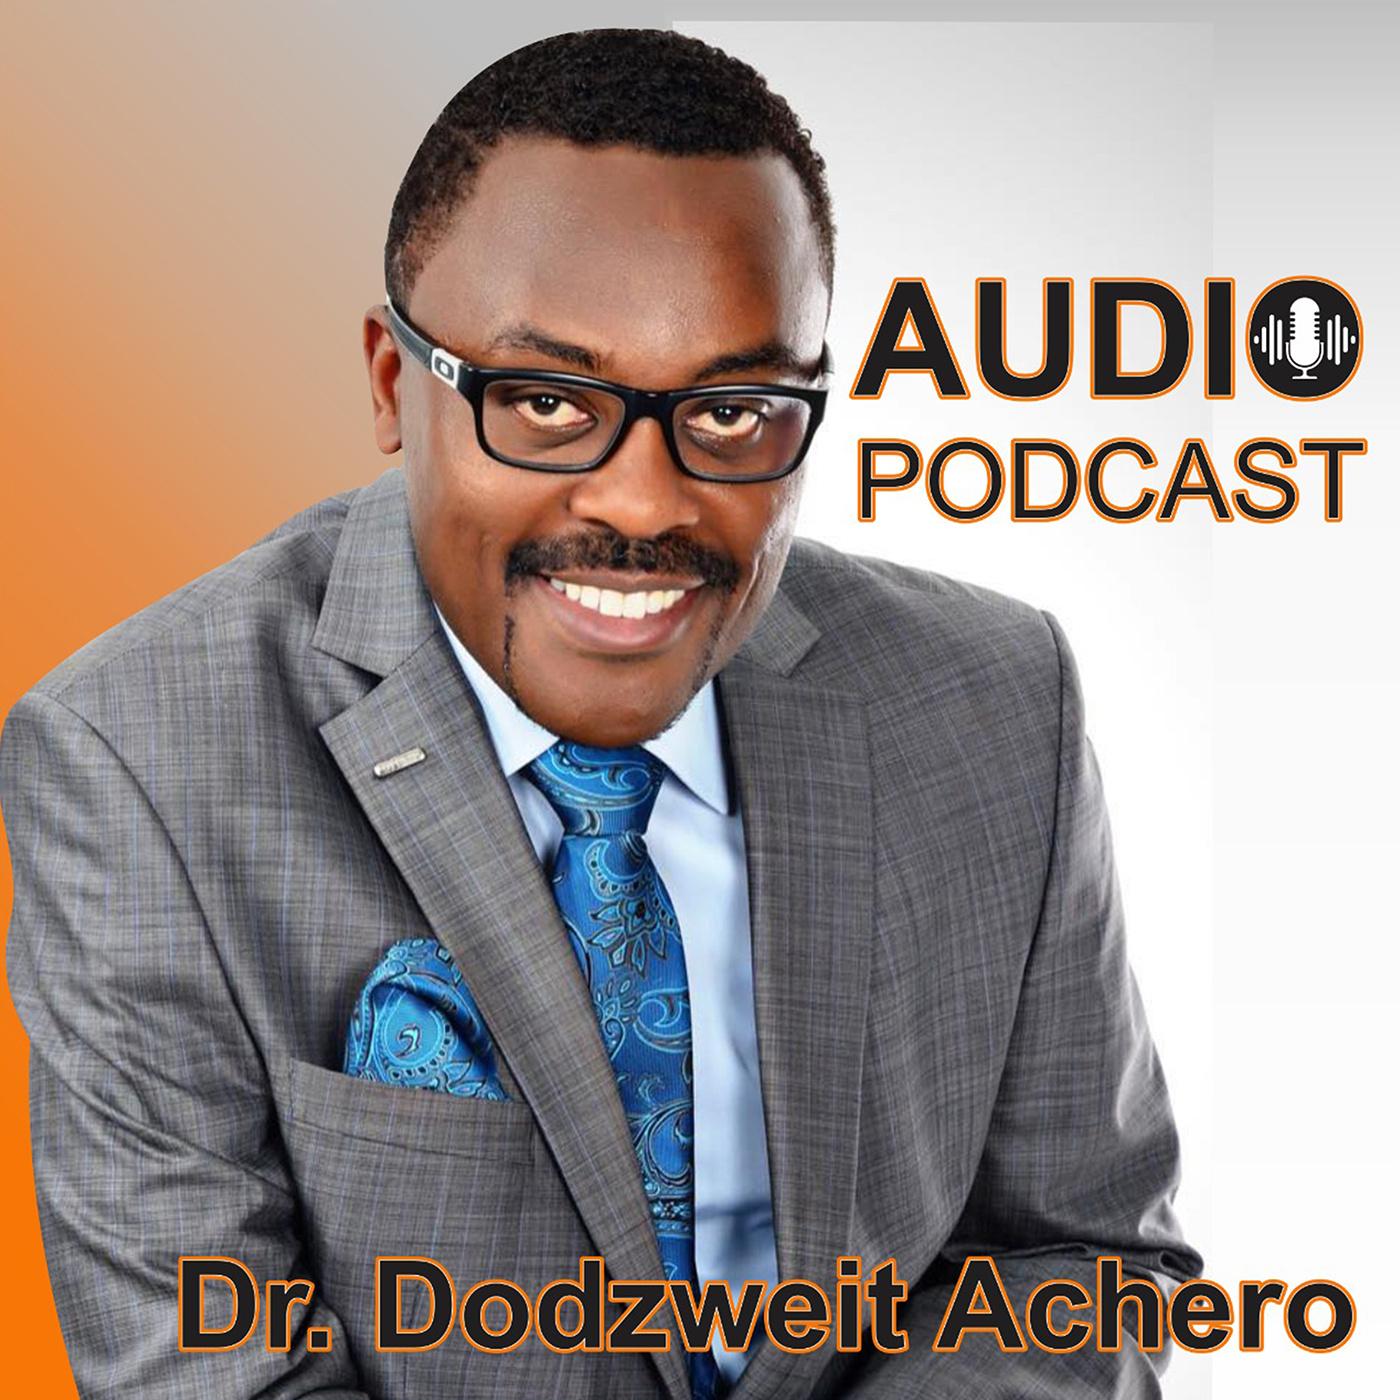 Dr. Dodzweit’s Podcast